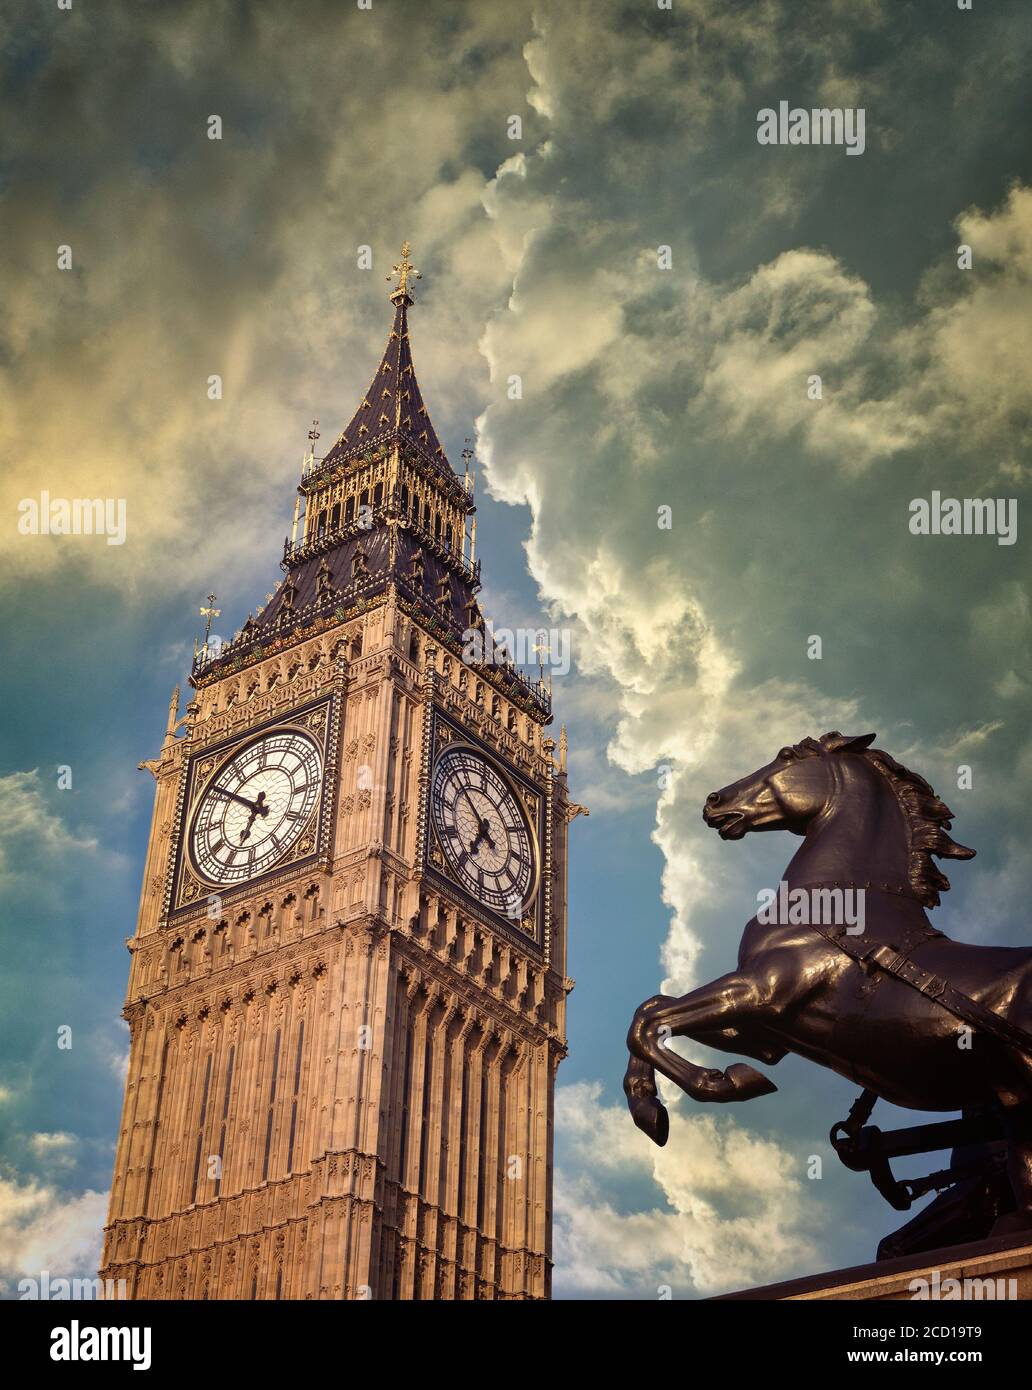 GB - LONDRES : Tour Elizabeth (Big Ben) au Parlement Banque D'Images